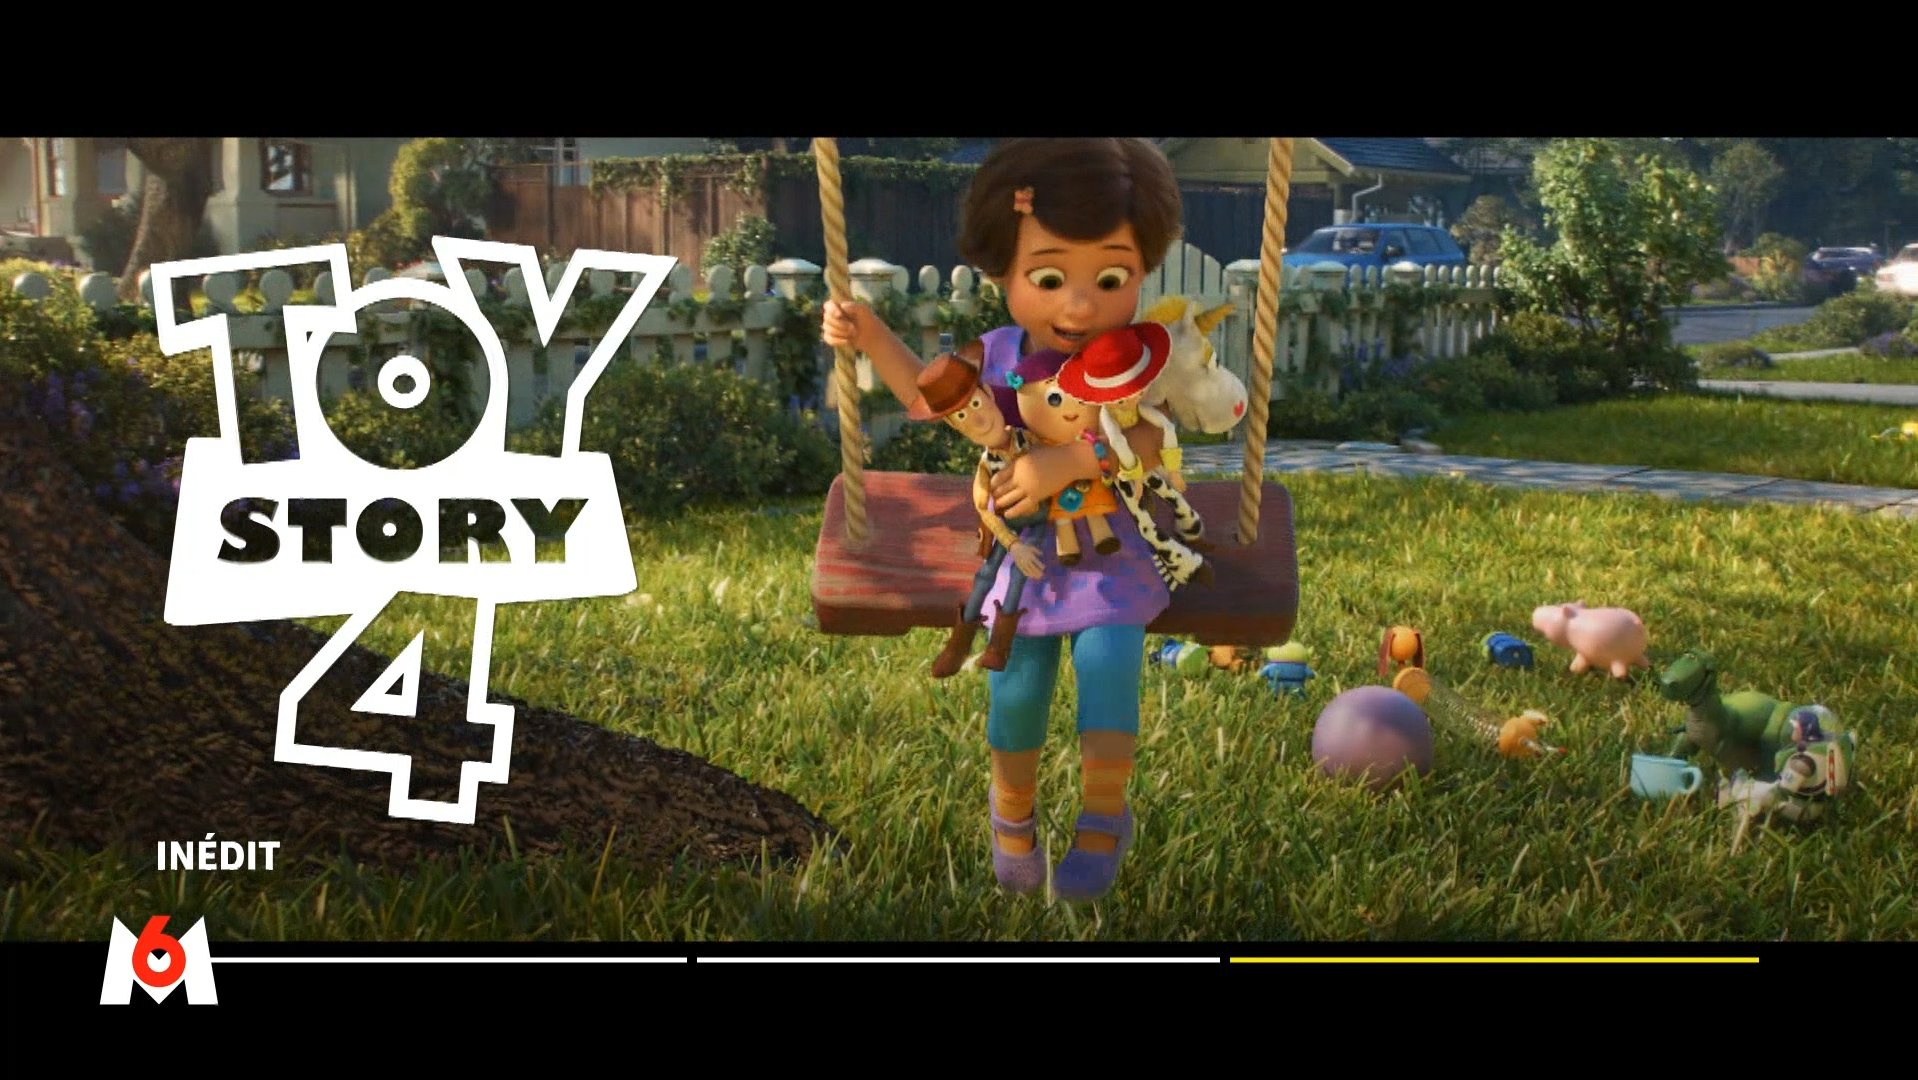 M6 on X: "Tout de suite, rejoignez la bande de Woody pour des aventures  hautes en couleur dans #ToyStory4 🧸 https://t.co/Khi2ShYTGw" / X